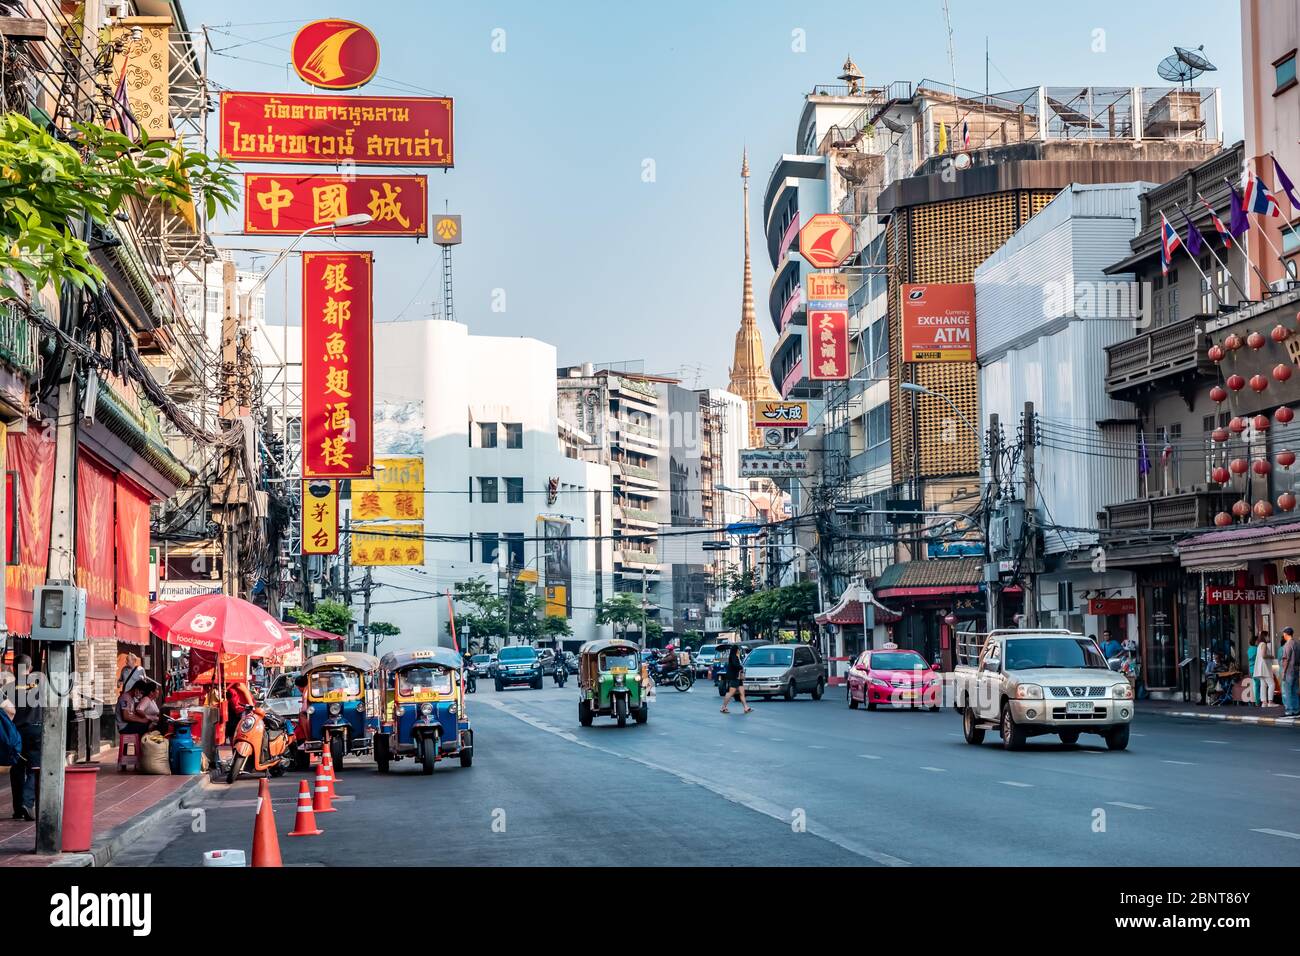 Yaowarat, Bangkok / Tailandia - 11 de febrero de 2020: Atasco de tráfico en Yaowarat Road, los turistas se conocen como China Town o Chinatown, foto de día Foto de stock